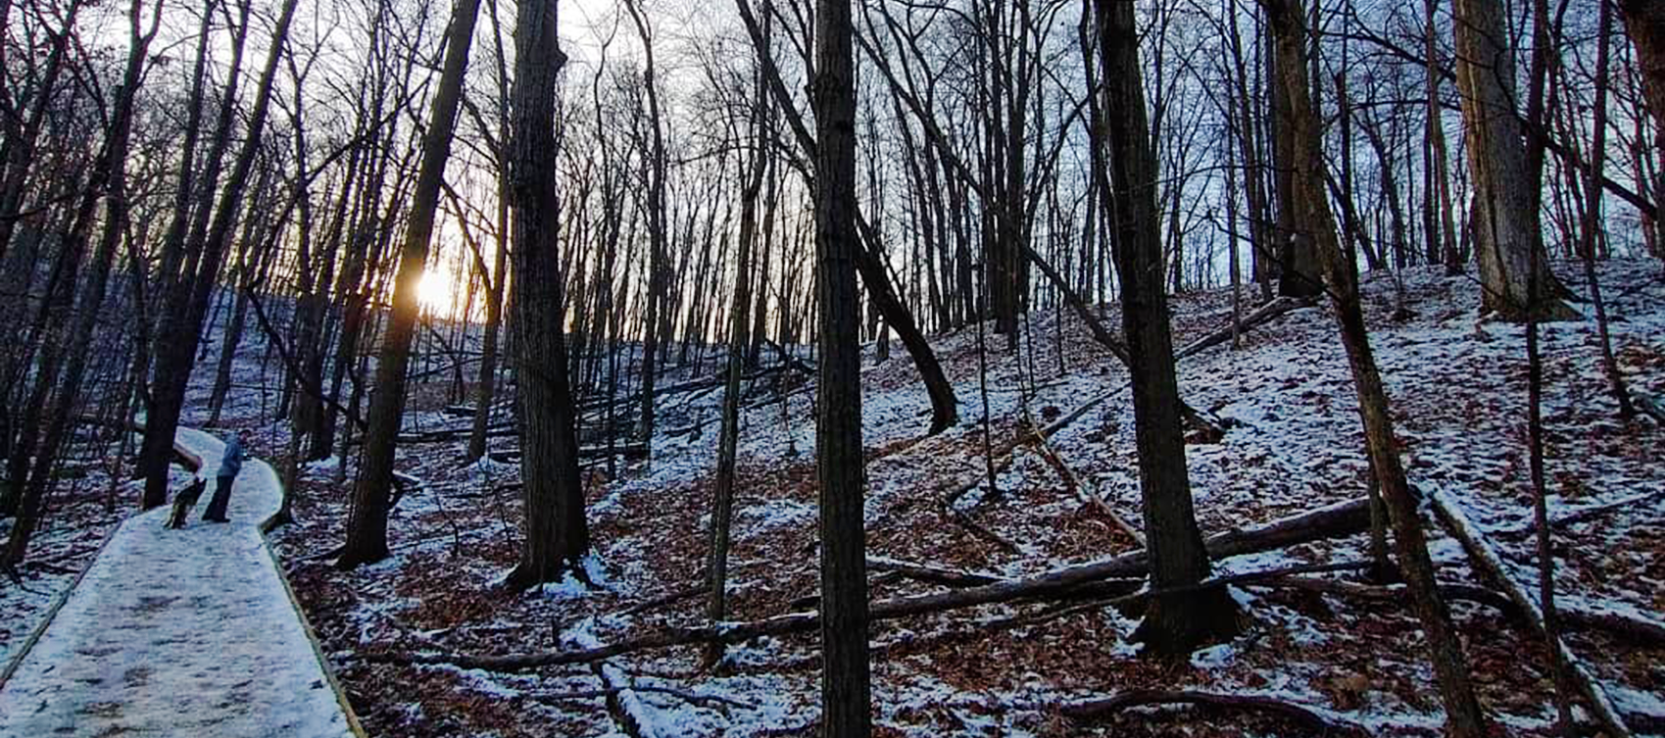 Cherry Hill Nature Preserve in winter